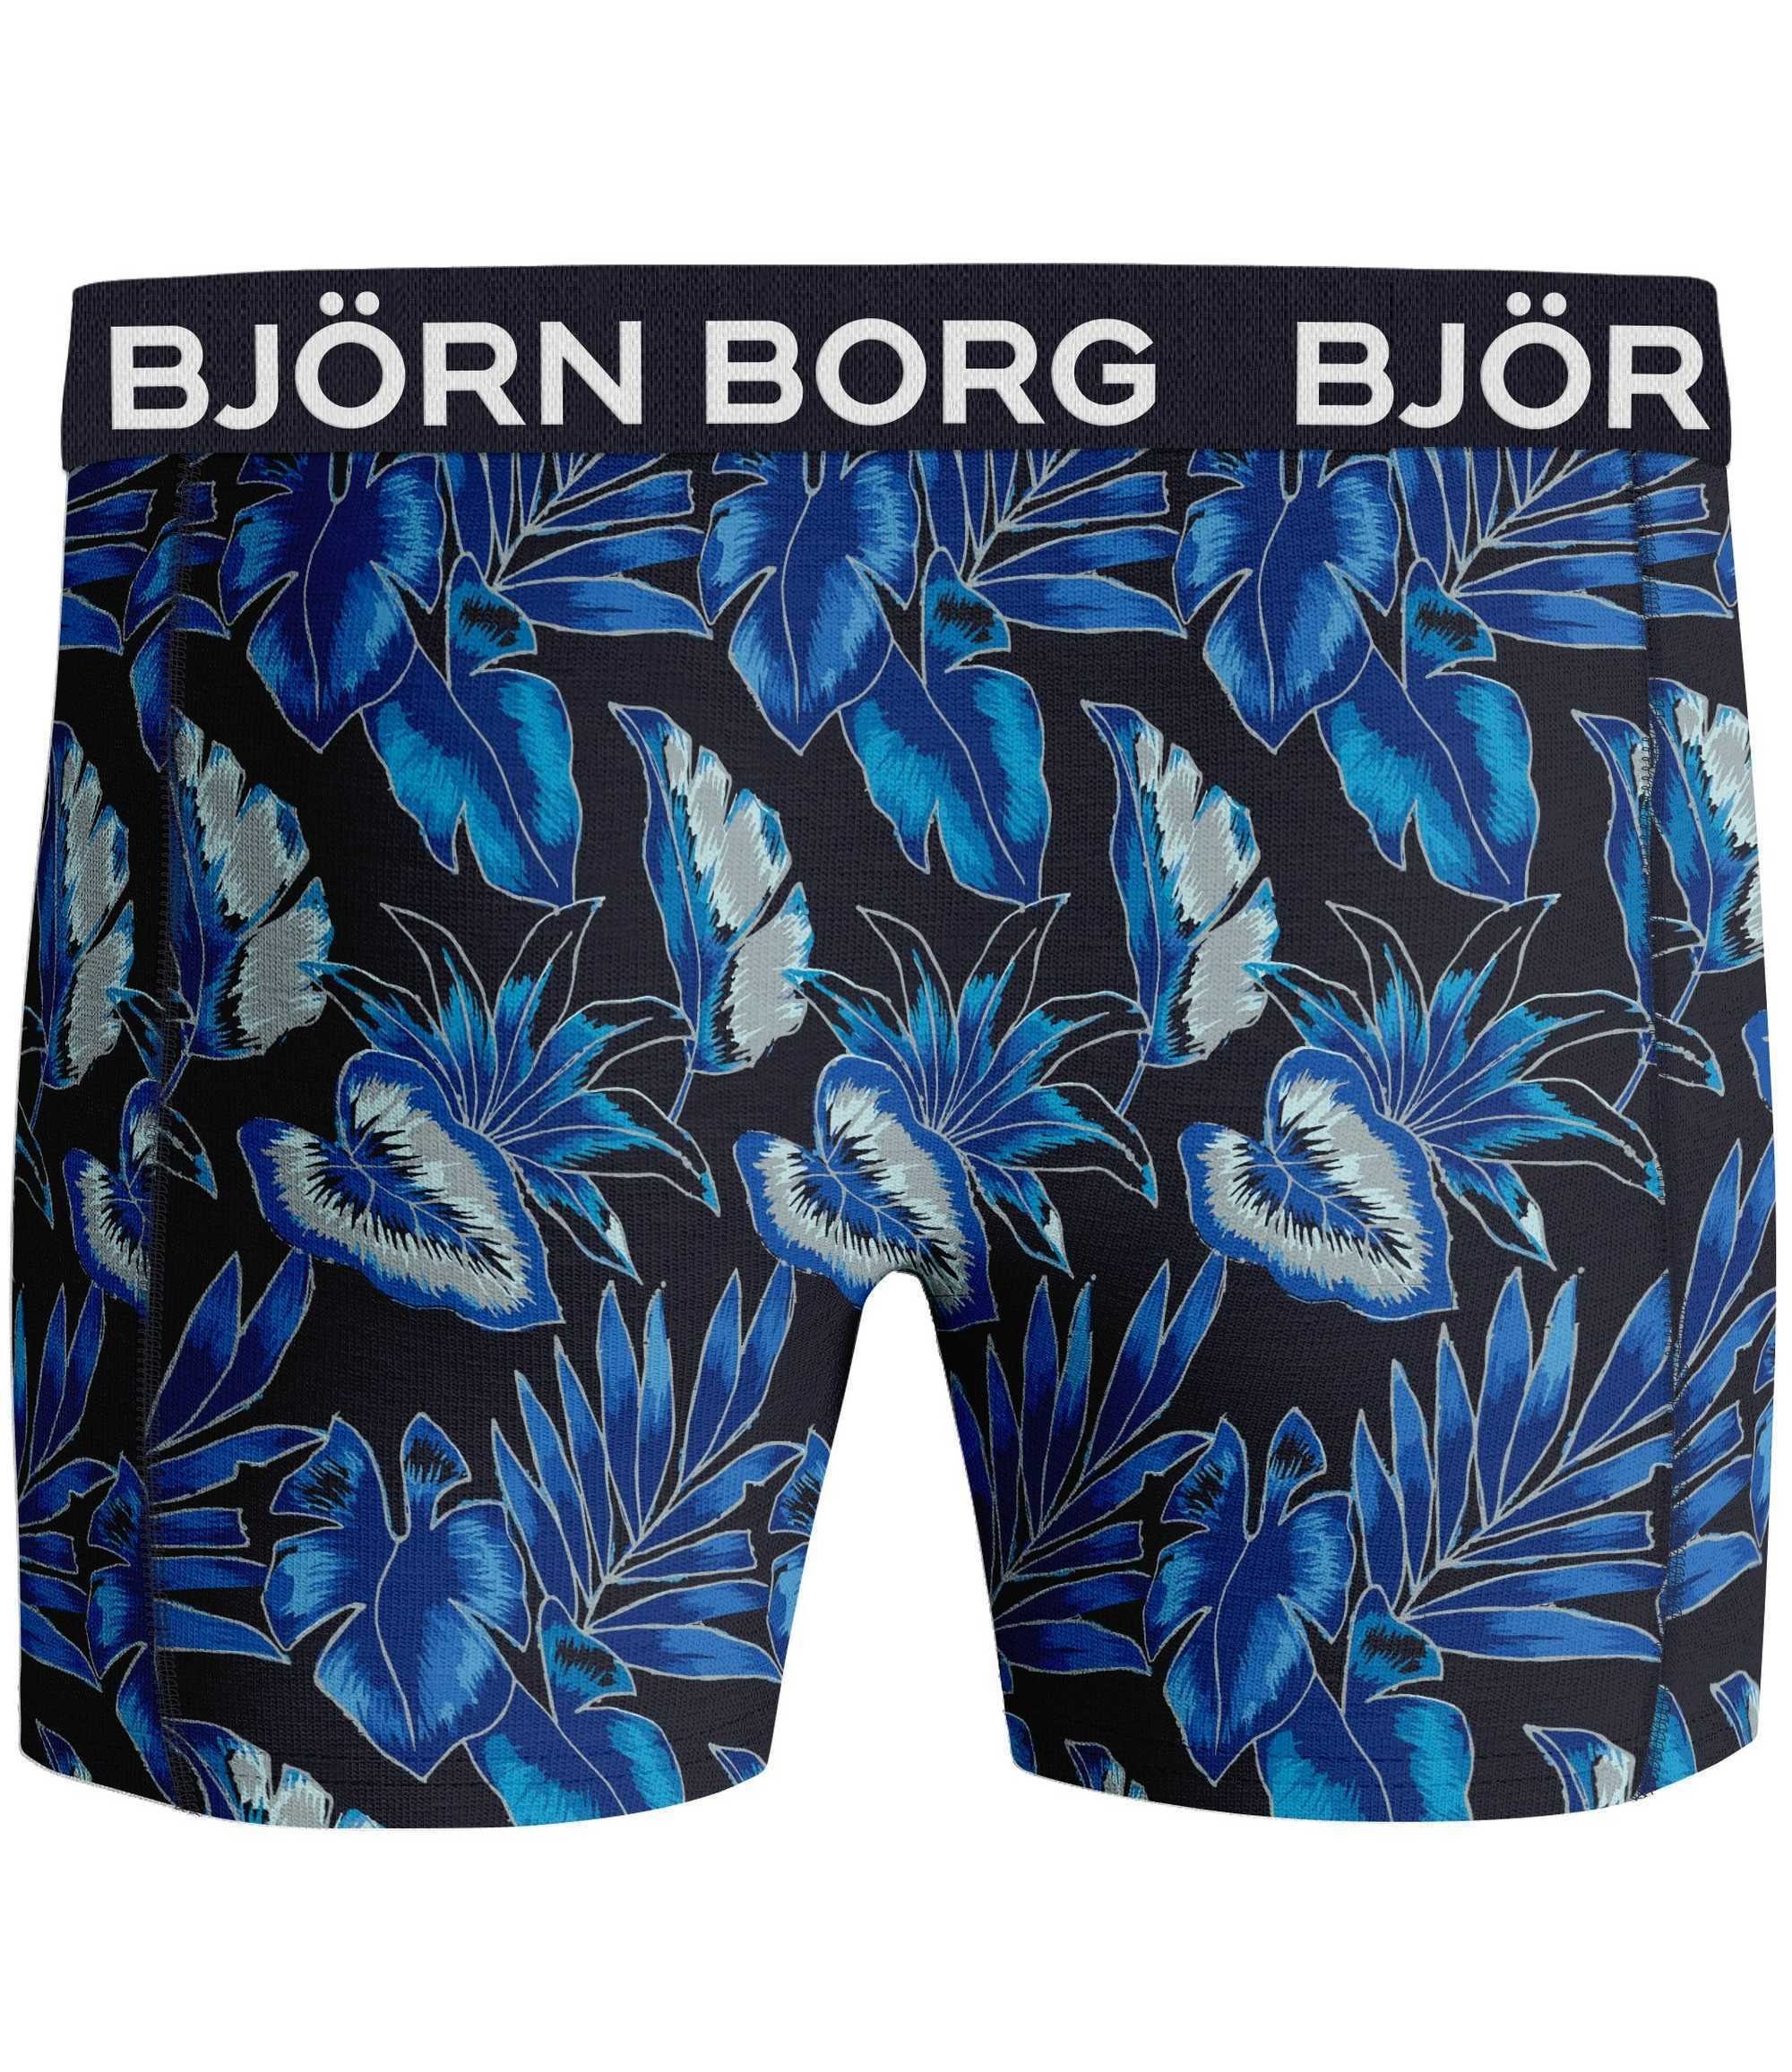 Björn Borg Boxer 5er Herren - Pack Unterwäsche Boxershorts, Blau